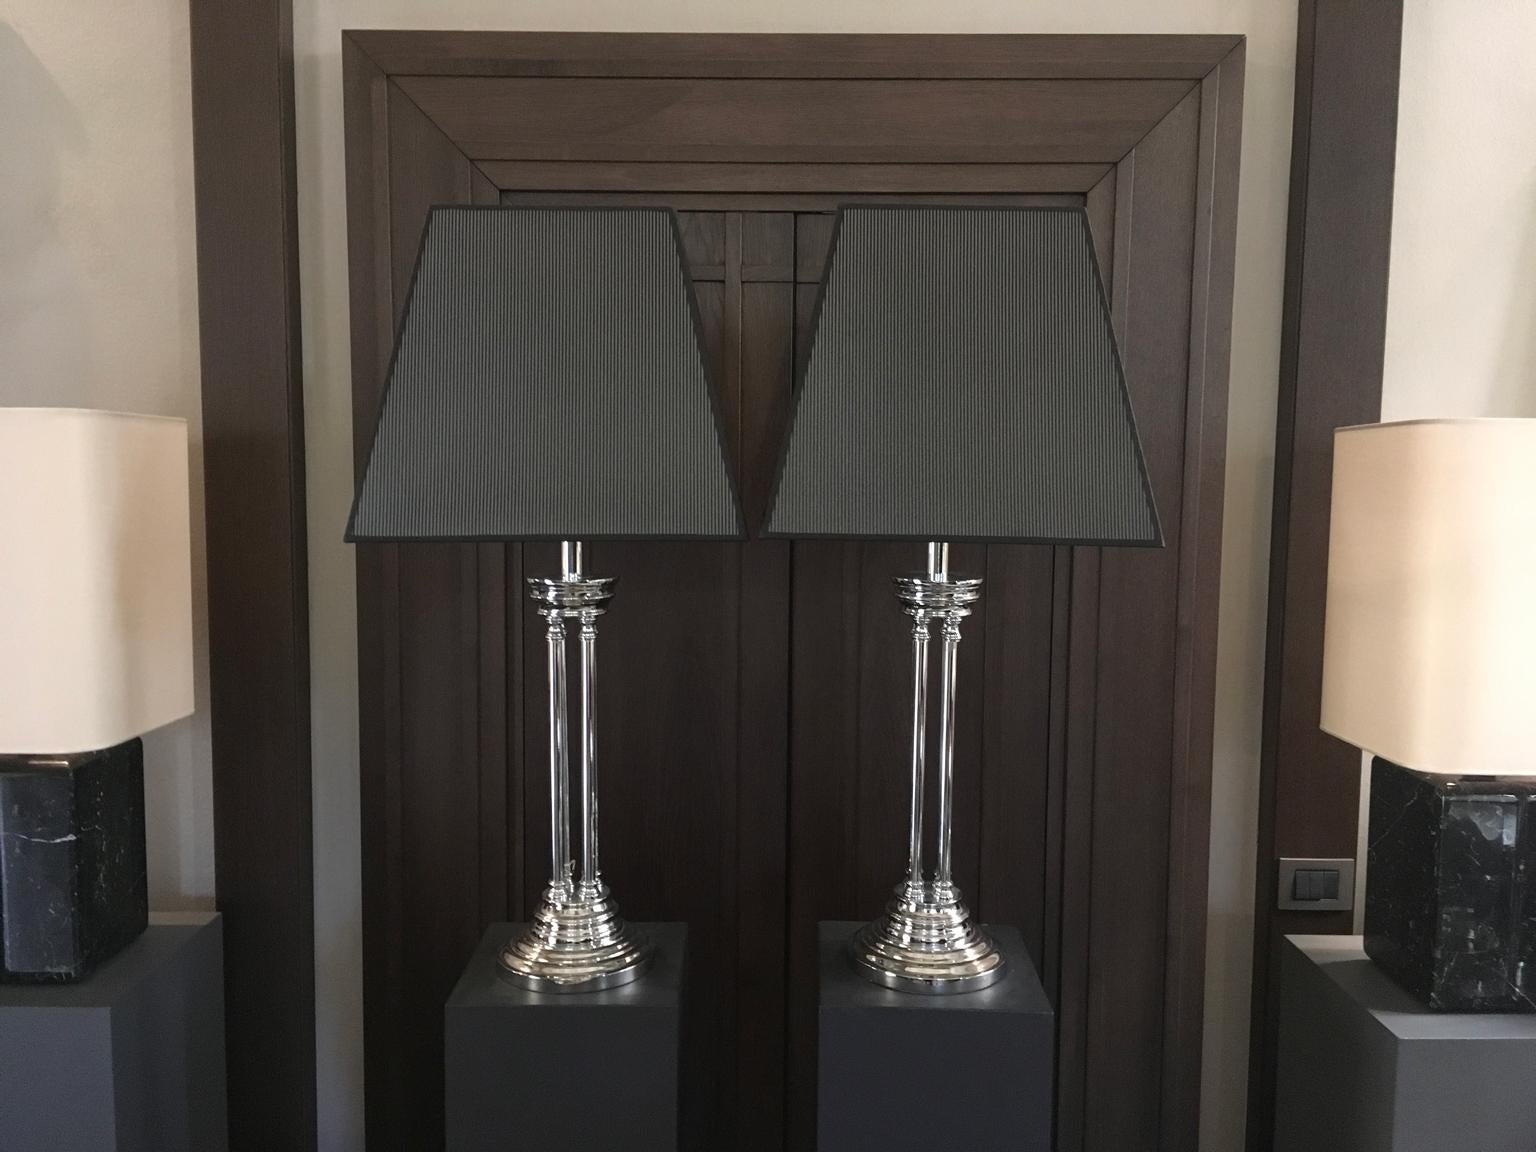 Cette paire d'élégantes lampes de table à colonnes a des abat-jour en forme de troncs pyramidaux de couleur noire  et du tissu de soie blanc. 

Câblage européen inclus.
Câblage USA/GB disponible sur demande prix inclus